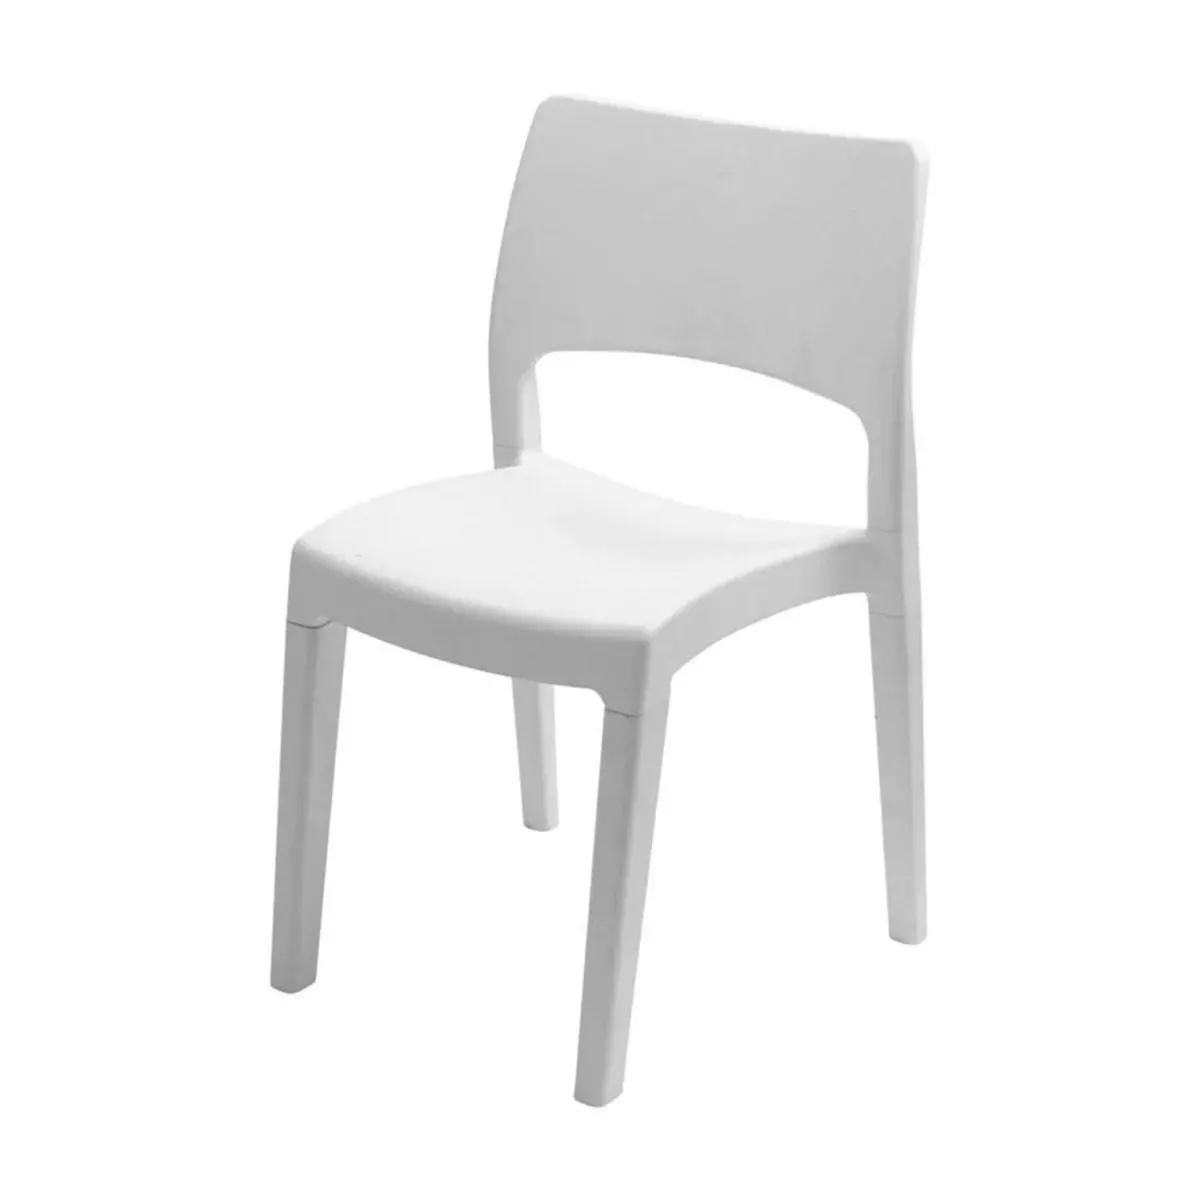 IPAE-PROGARDEN Chaise blanche 50x51xH82cm en résine Blanche Démontable et empilable Intérieur/extérieur jardin terrasse maison PROGARDEN